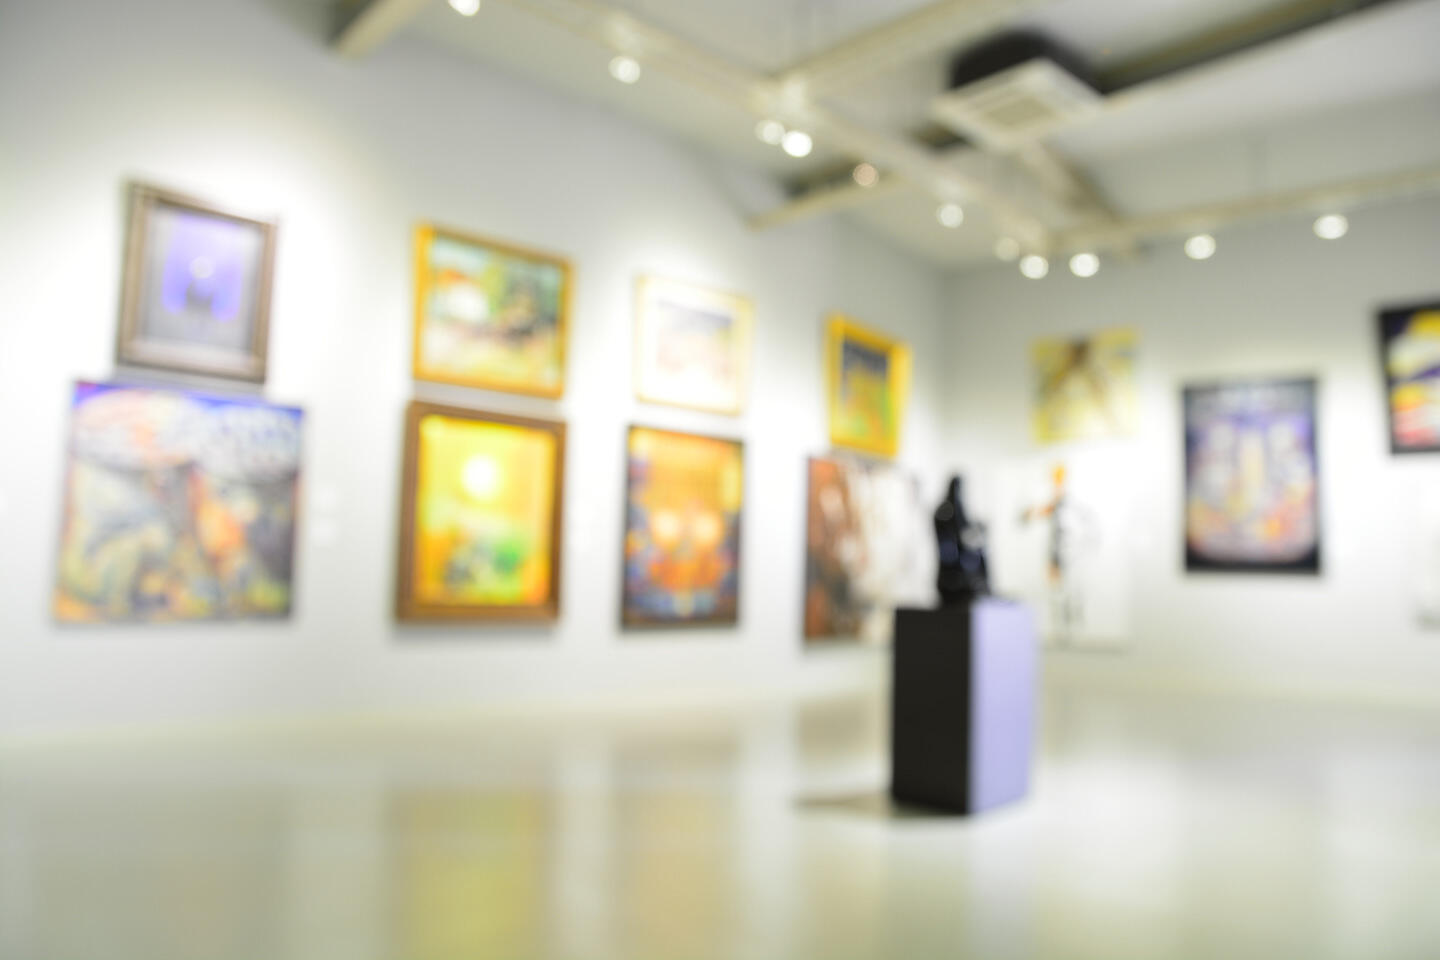 Vista interior borrosa de una galería de arte contemporáneo con paredes adornadas con pinturas coloridas en marcos variados y una escultura sobre un pedestal en el centro, creando una atmósfera artística inmersiva y dinámica.